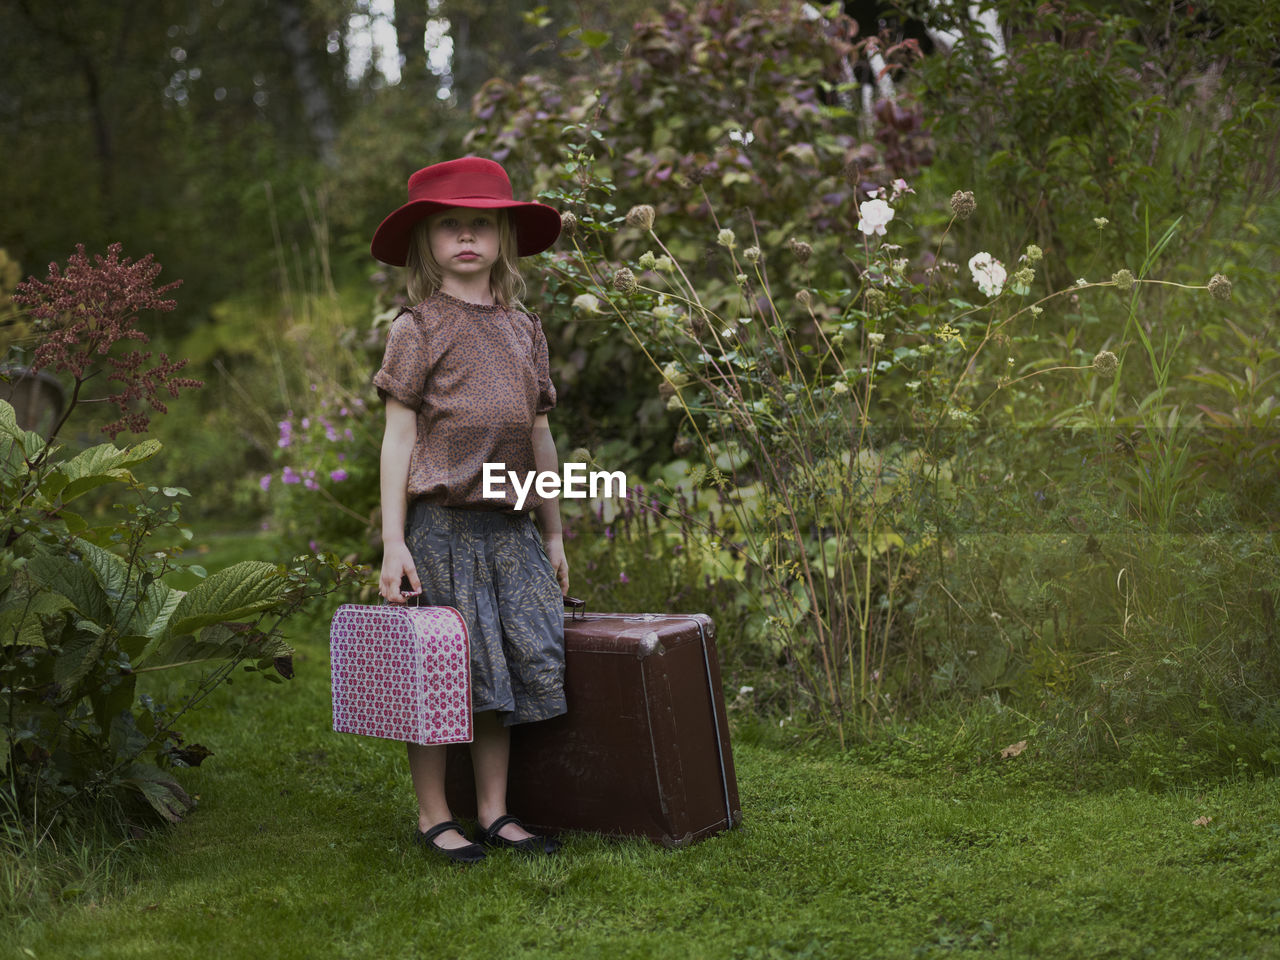 Girl with suitcases in garden, varmdo, uppland, sweden